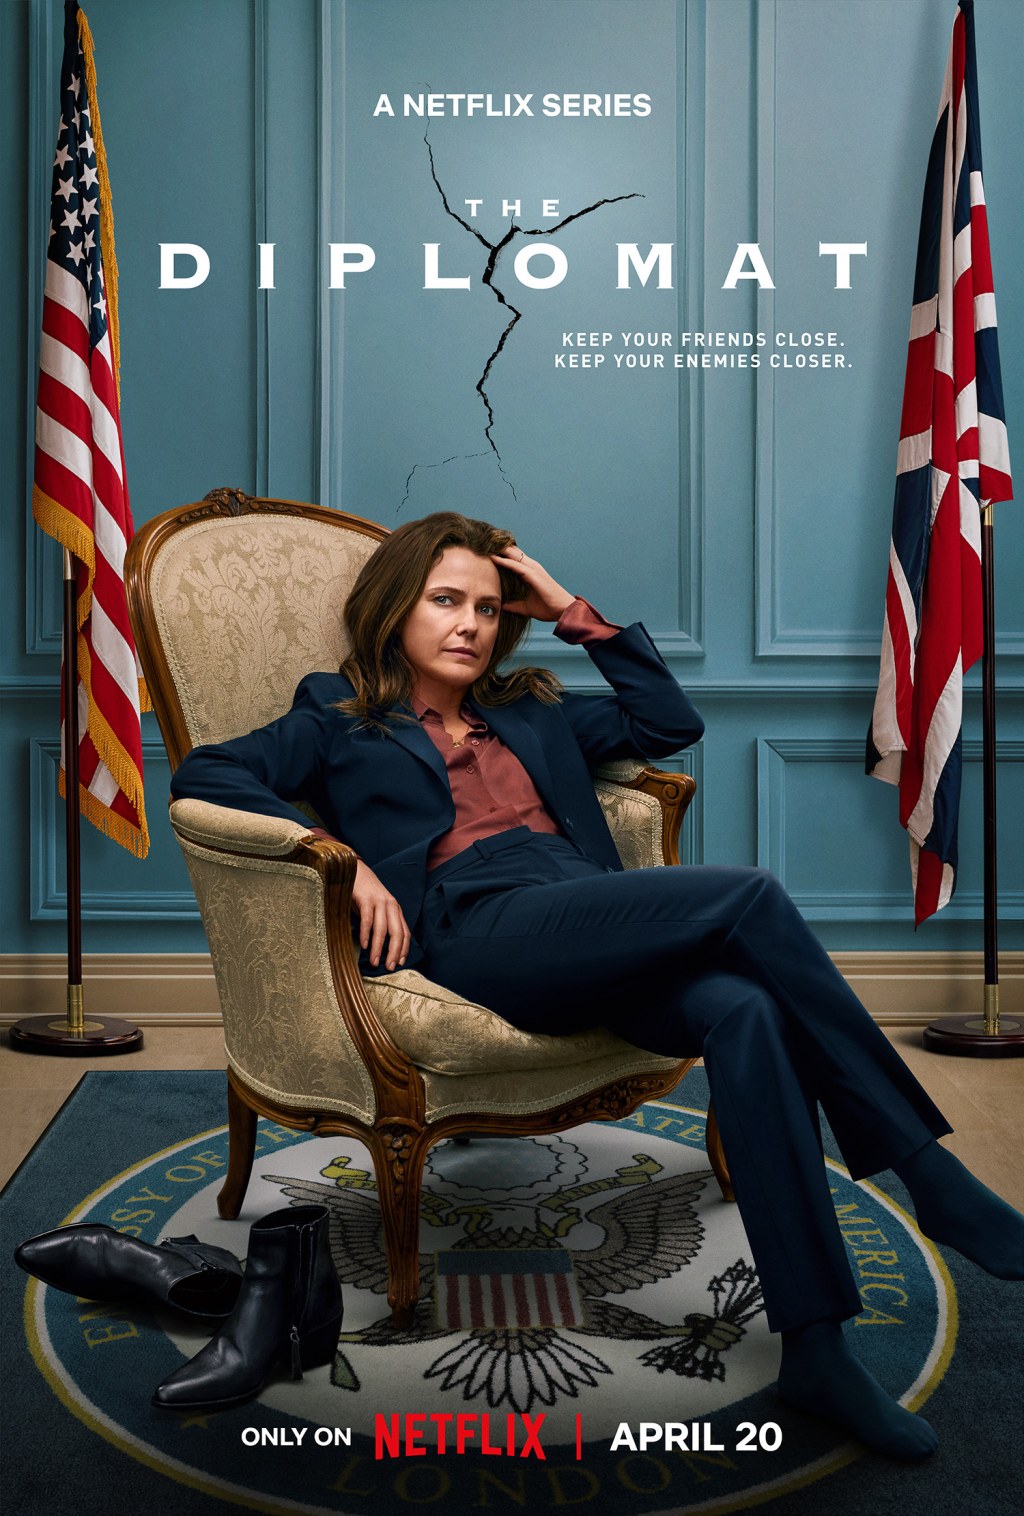 diplomacy tv series - The Diplomat (American TV series) - Wikipedia